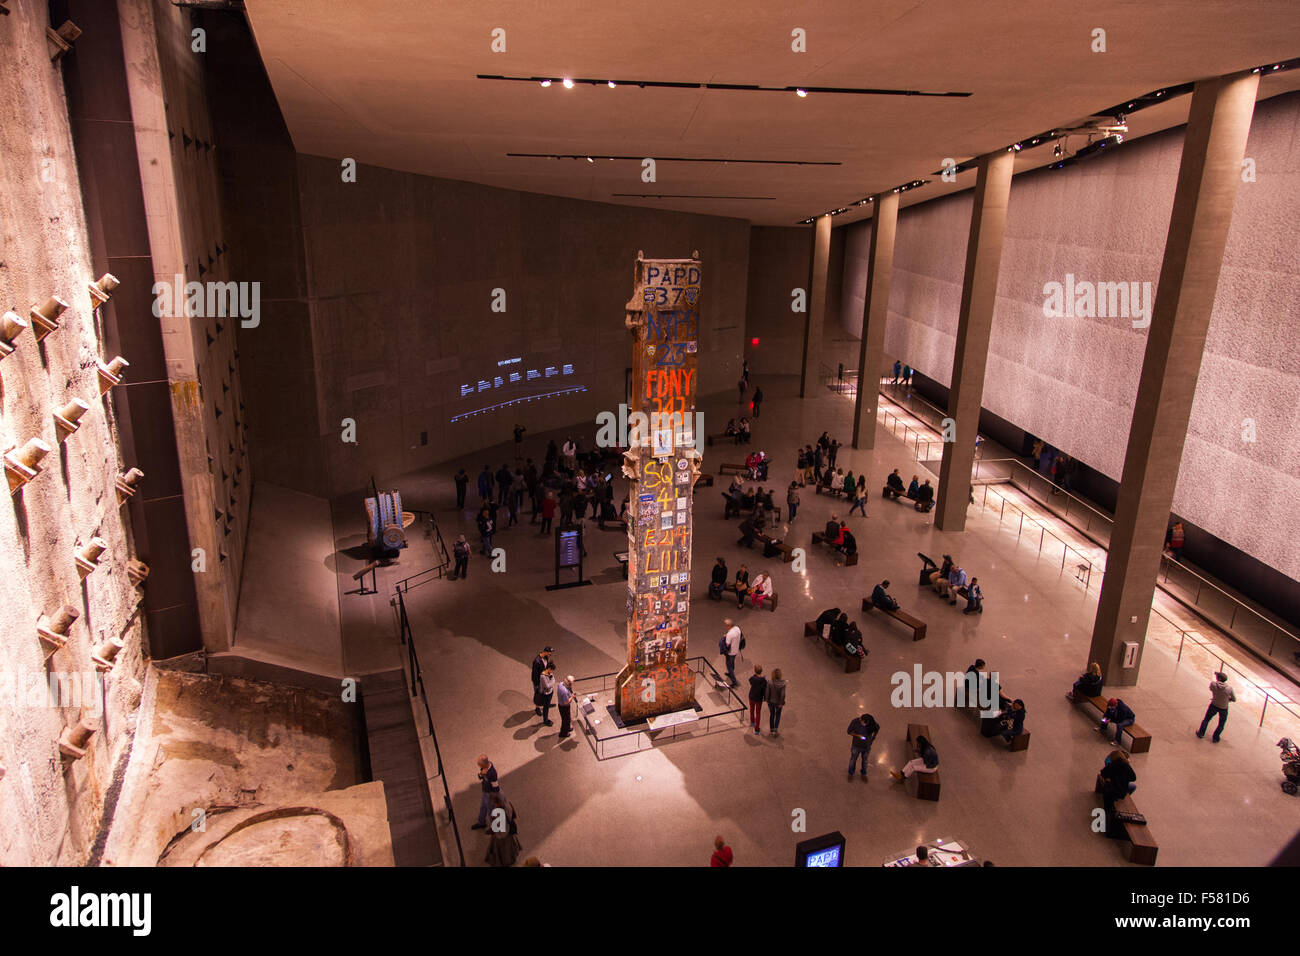 Dernière colonne de Ground Zero, 11 septembre National Memorial & Museum le 11 septembre 2001, New York City, États-Unis d'Amérique. Banque D'Images